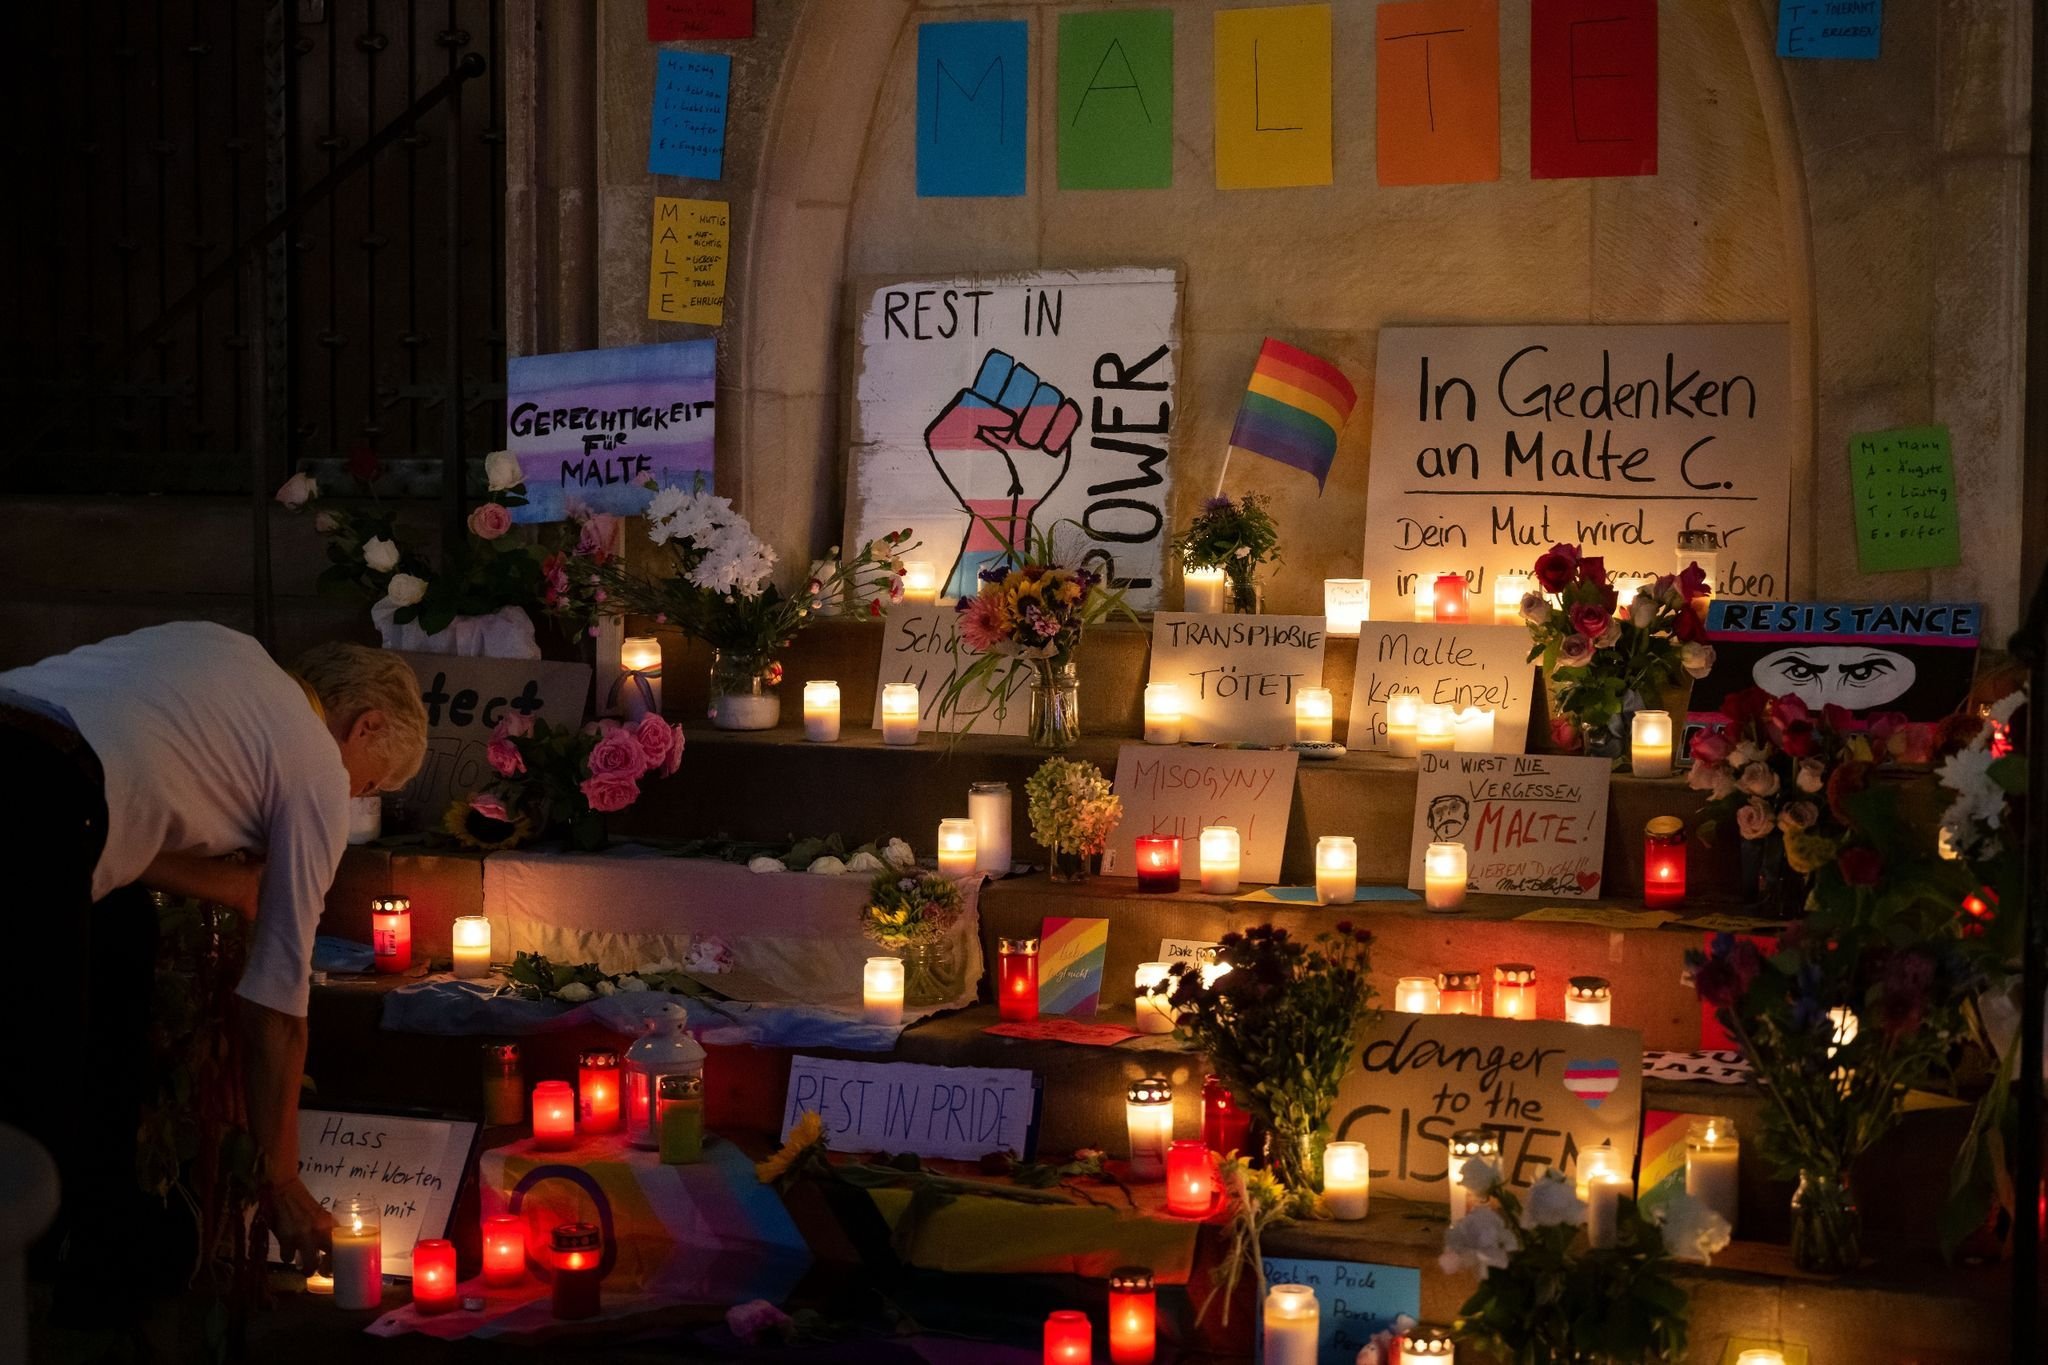 Tödliche Attacke beim CSD in Münster: Urteil erwartet